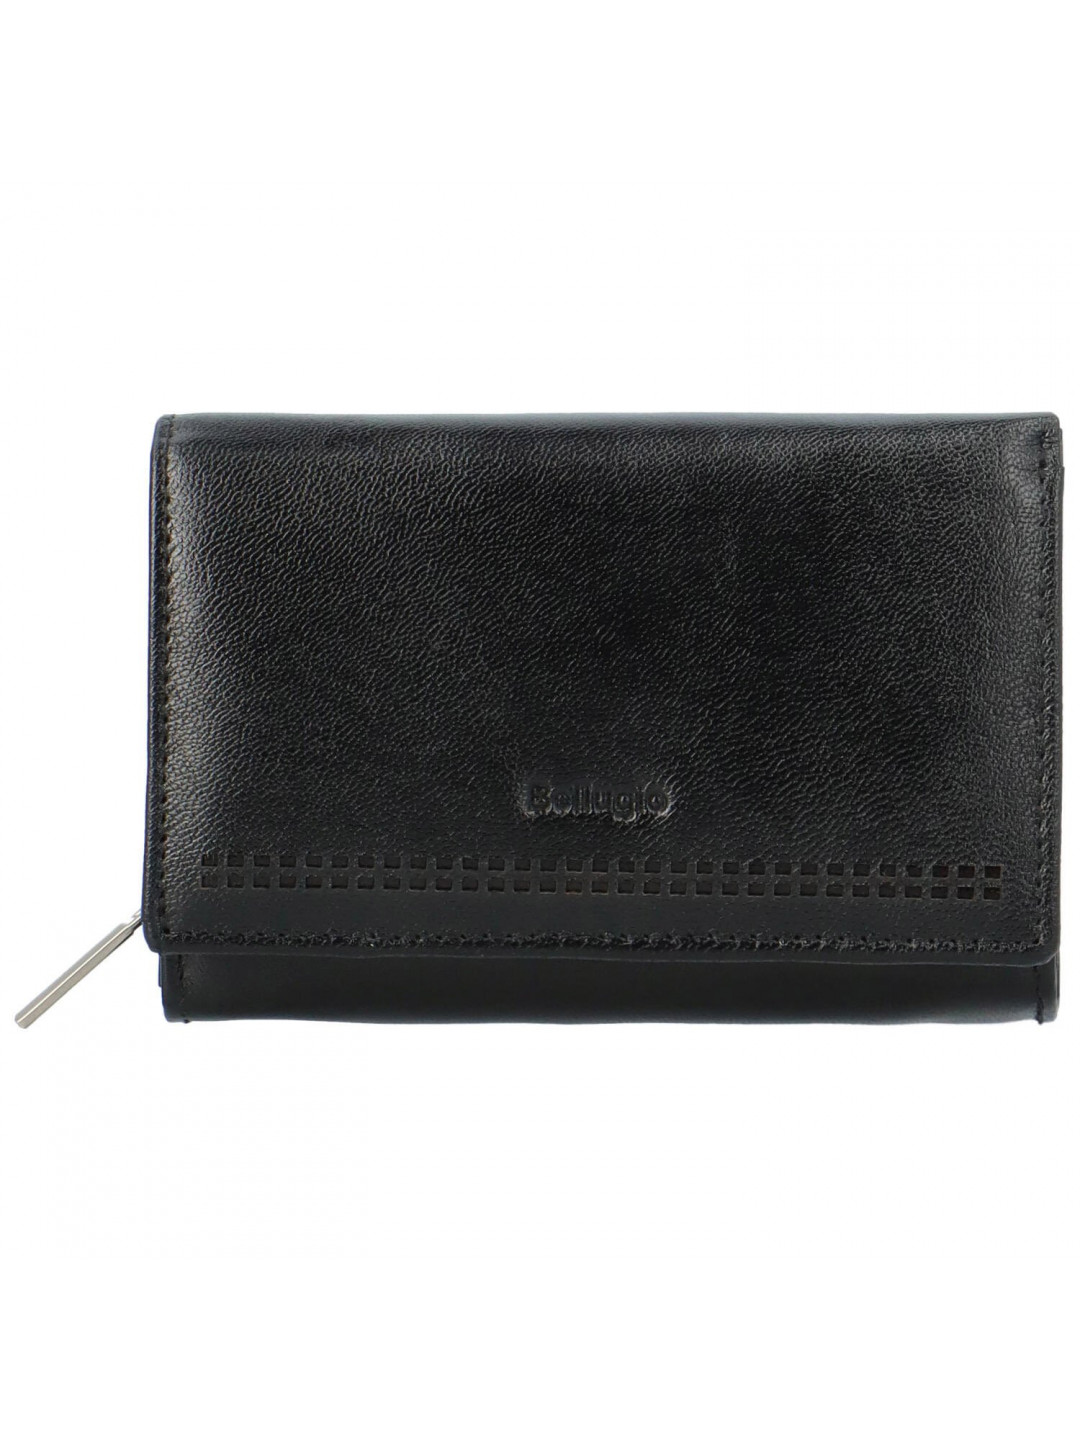 Dámská kožená peněženka černá – Bellugio Chiarana